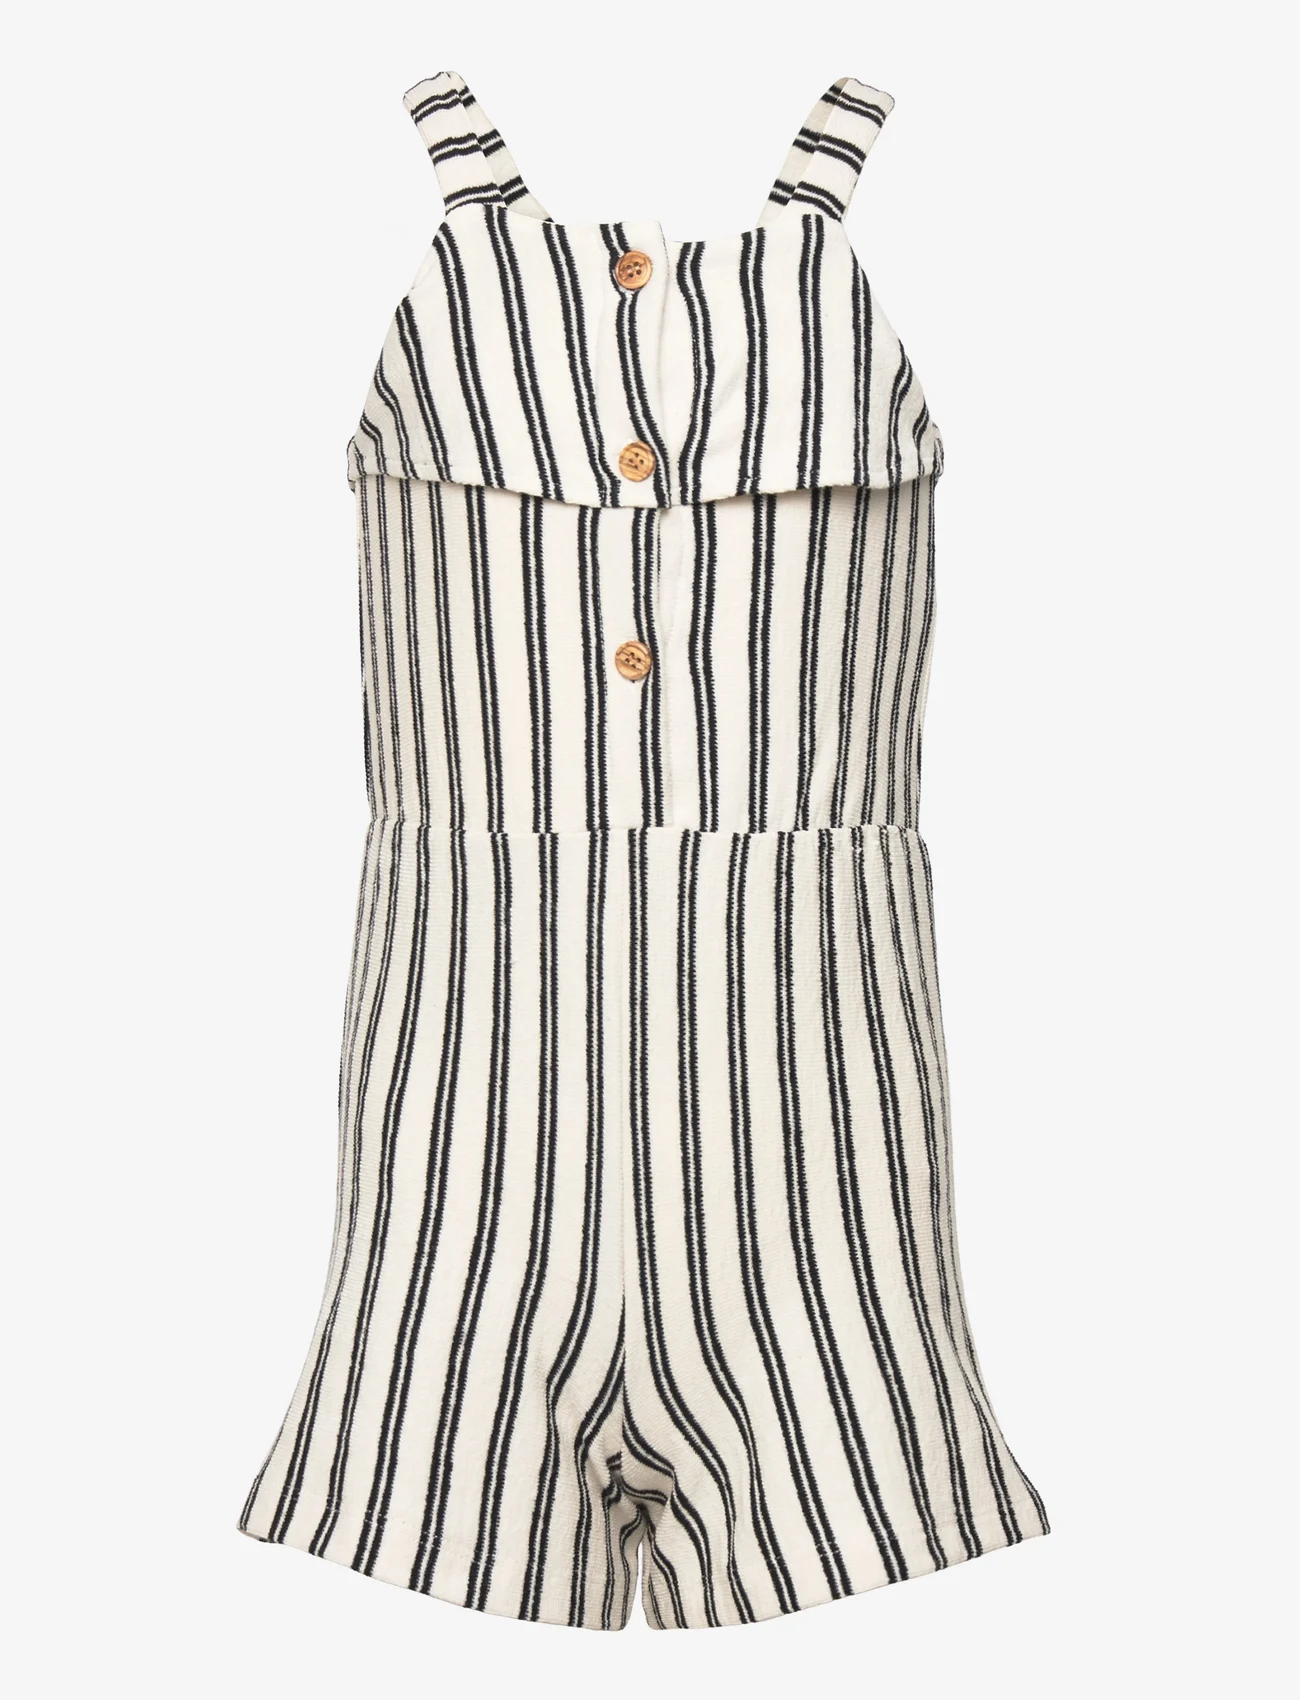 Mango - Striped jumpsuit - gode sommertilbud - natural white - 0